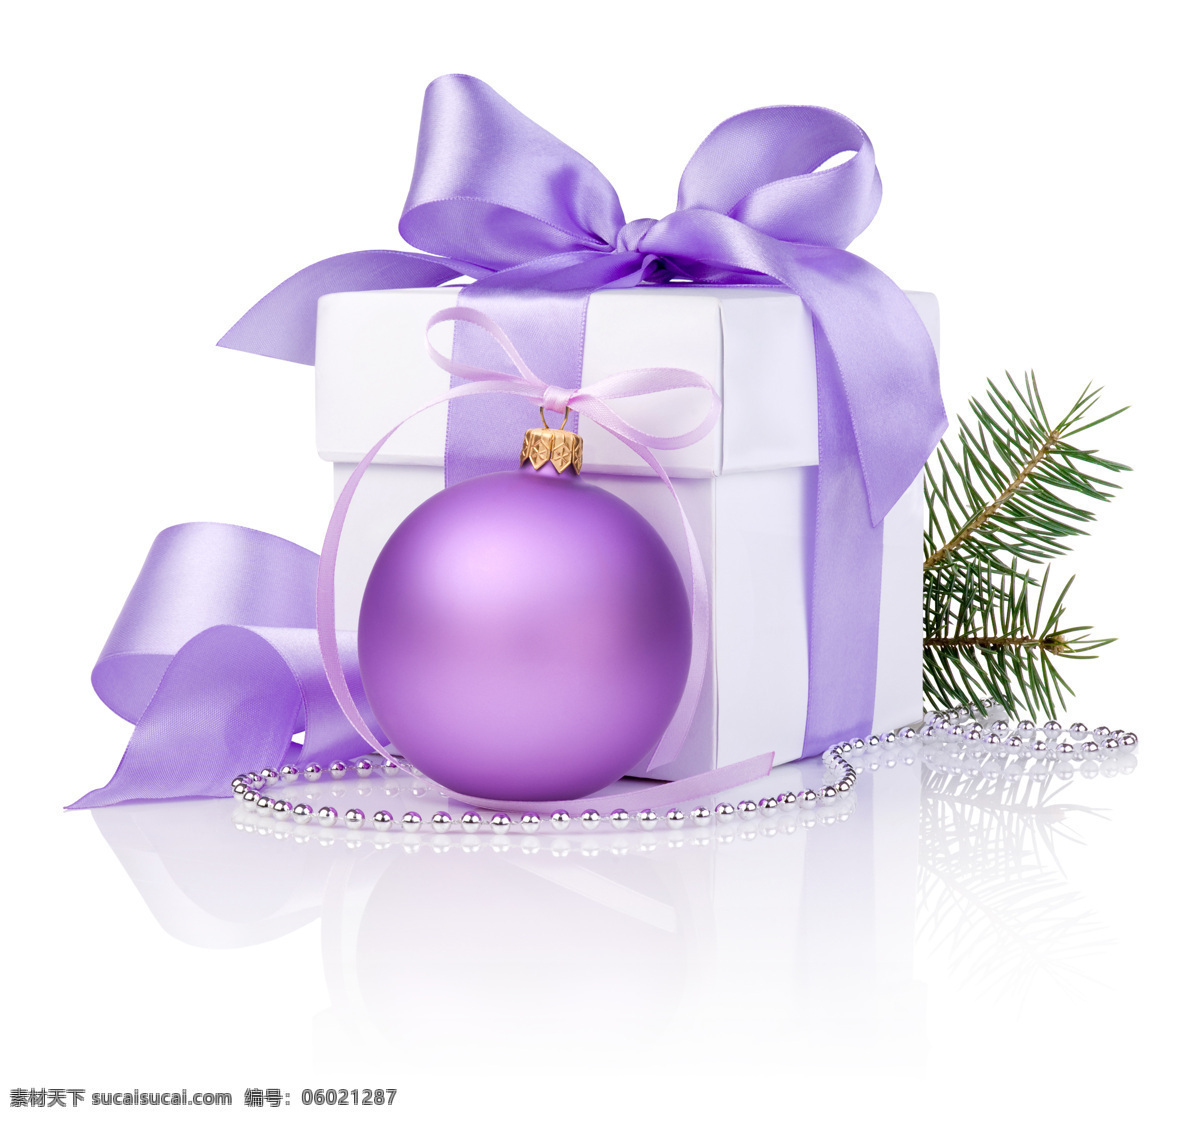 紫色 圣诞节 礼物 盒 礼物盒 吊饰 蝴蝶结 圣诞节图片 生活百科